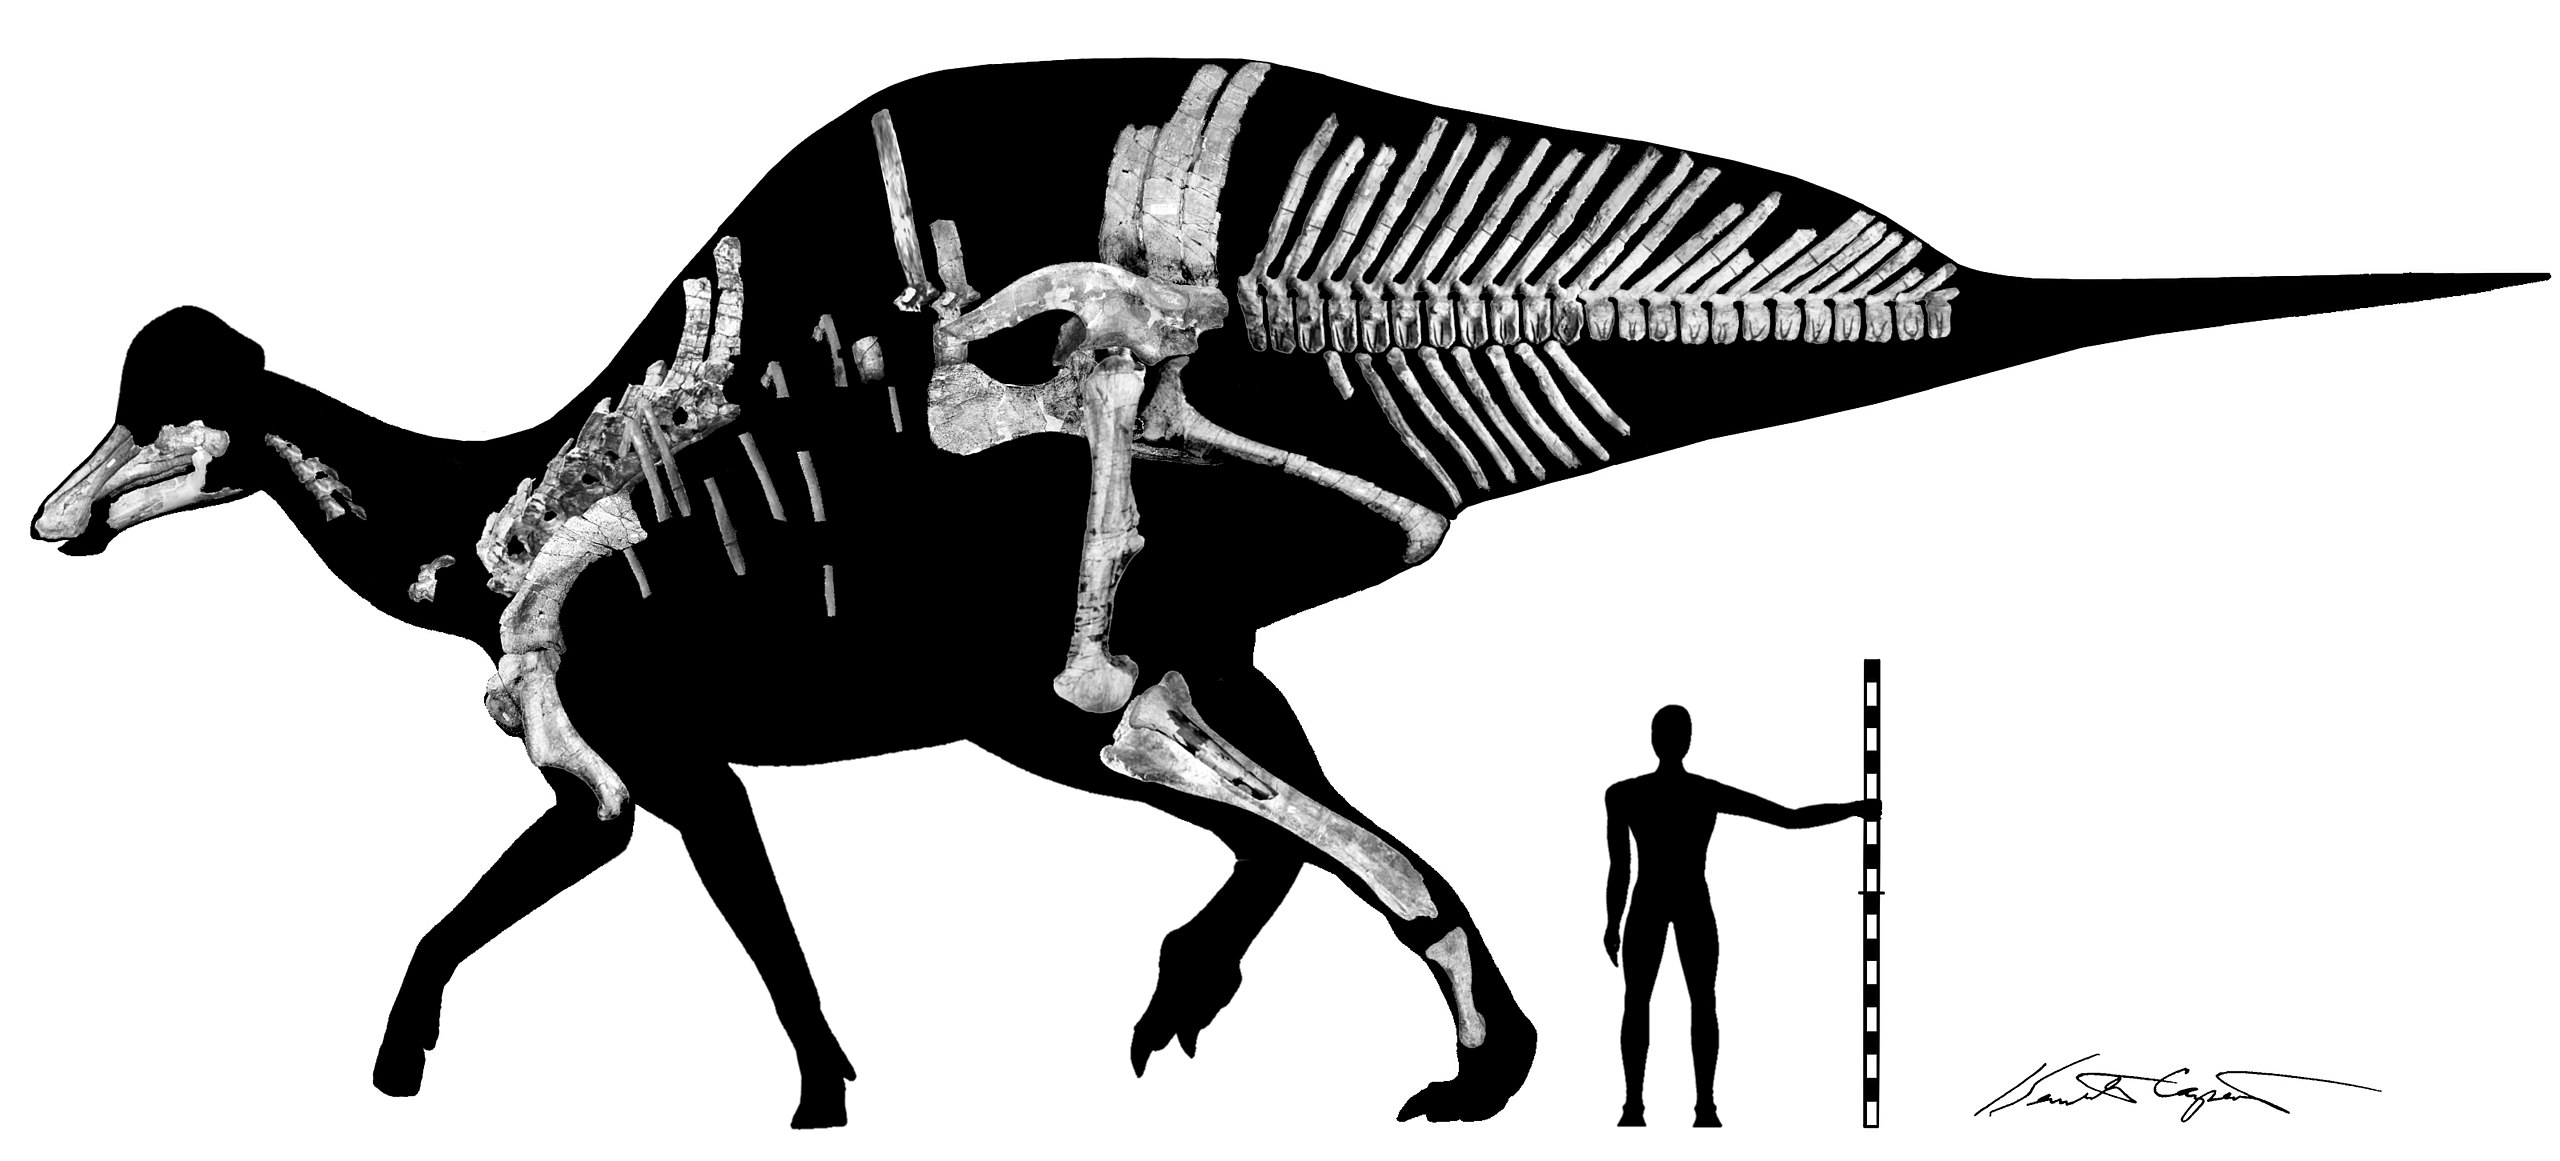 Mezi největší dnes známé kachnozobé dinosaury patří i mexický lambeosaurid druhu Magnapaulia laticaudus. Na základě kosti pažní dlouhé přes 80 cm je dnes délka tohoto hadrosaurida odhadována asi na 12,5 metru a jeho hmotnost zhruba na 8 tun. Kredit: 